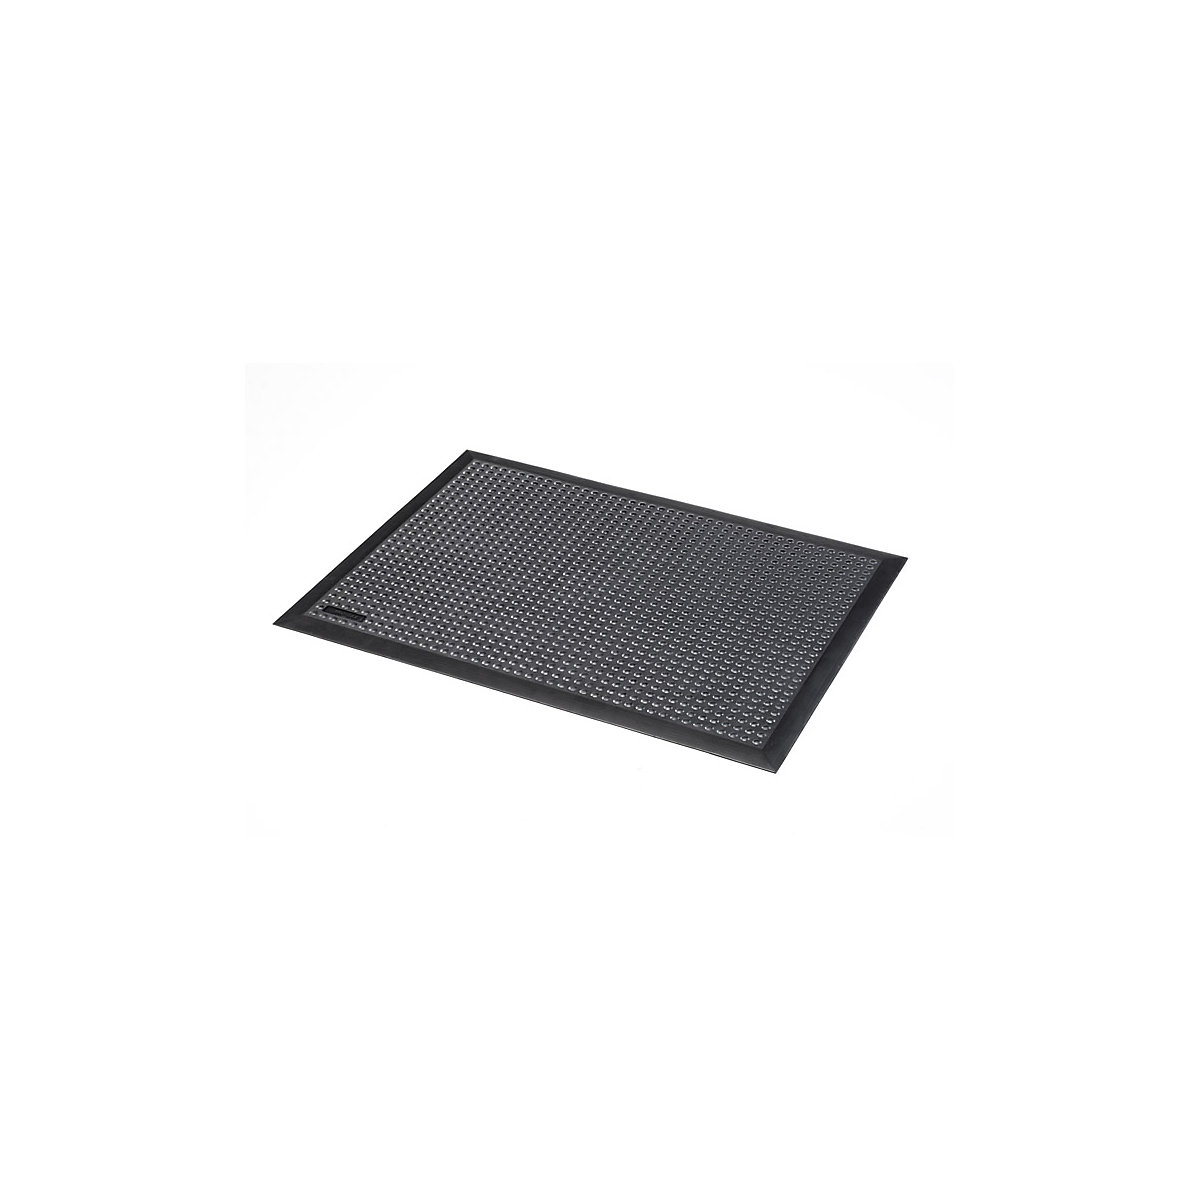 Skystep™ workstation matting – NOTRAX, black, LxWxH 1200 x 900 x 13 mm-5